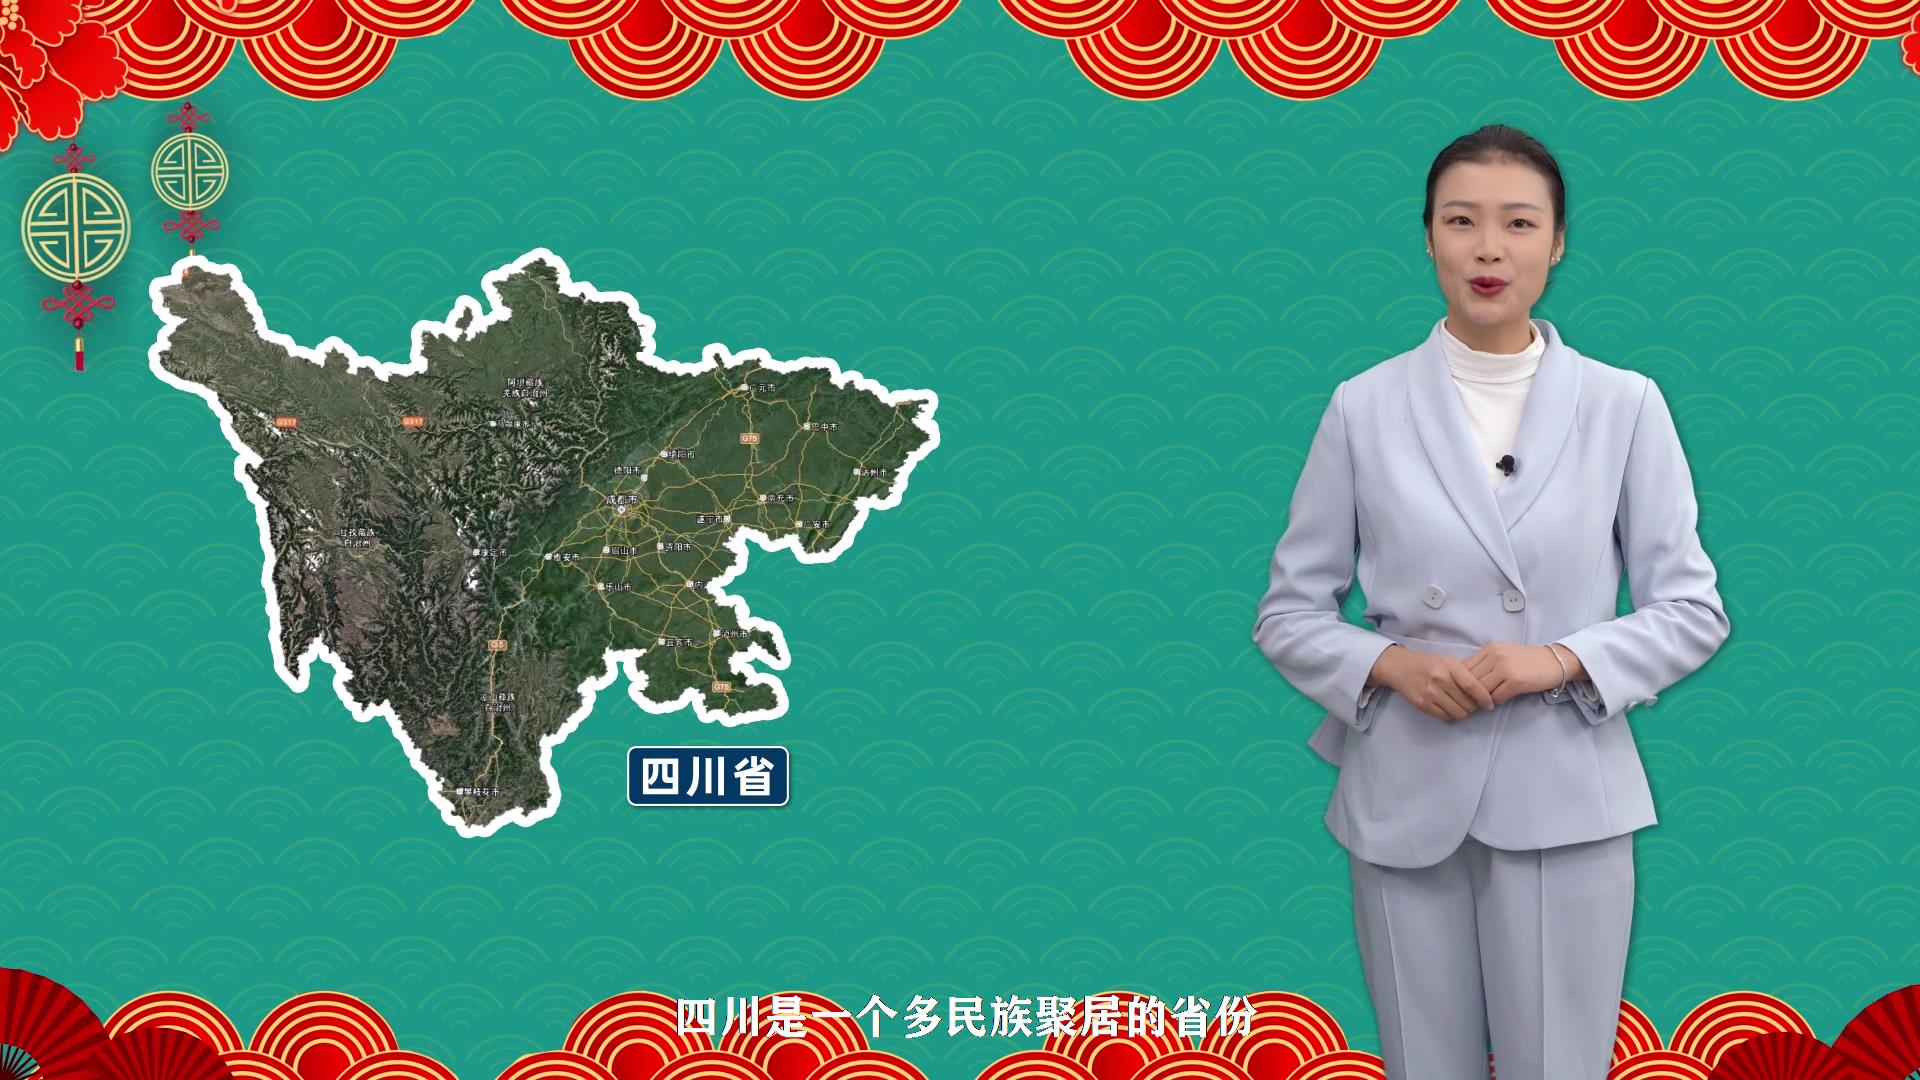 Diet knowledge of ethnic minorities in Sichuan